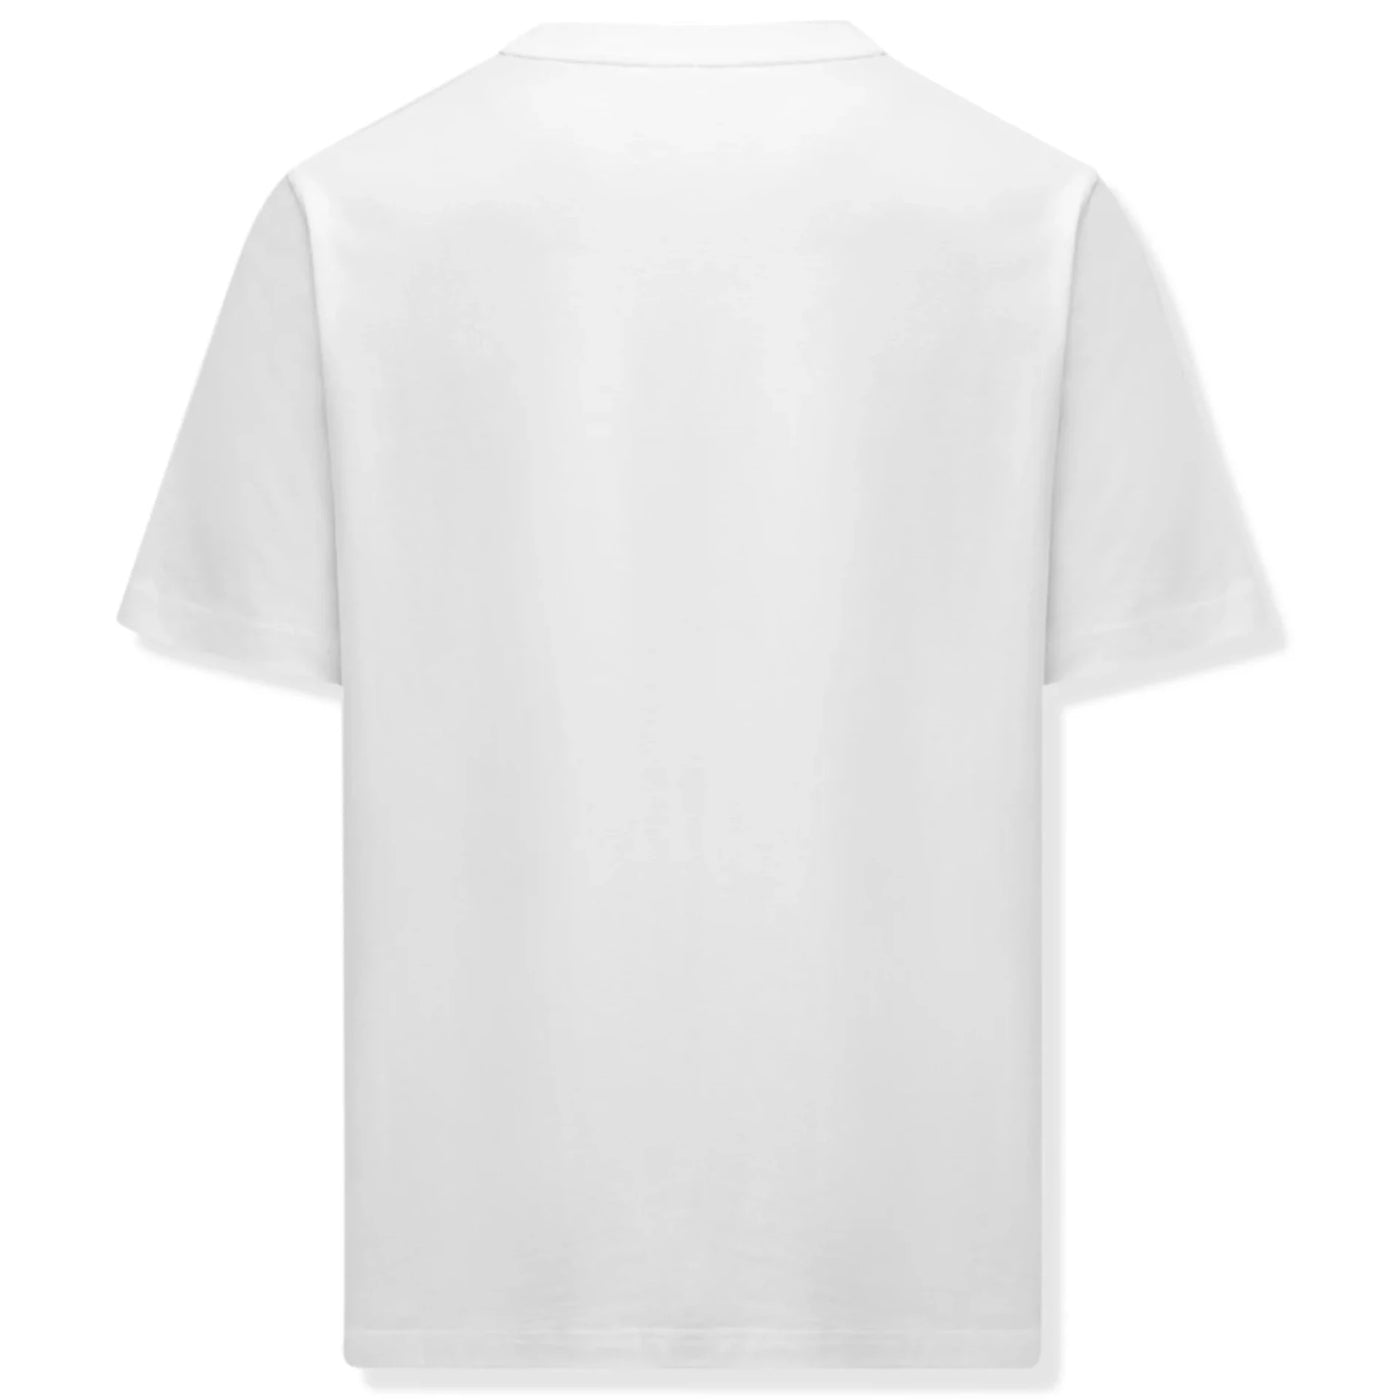 Casablanca Tennis Club Icon Printed T-shirt White